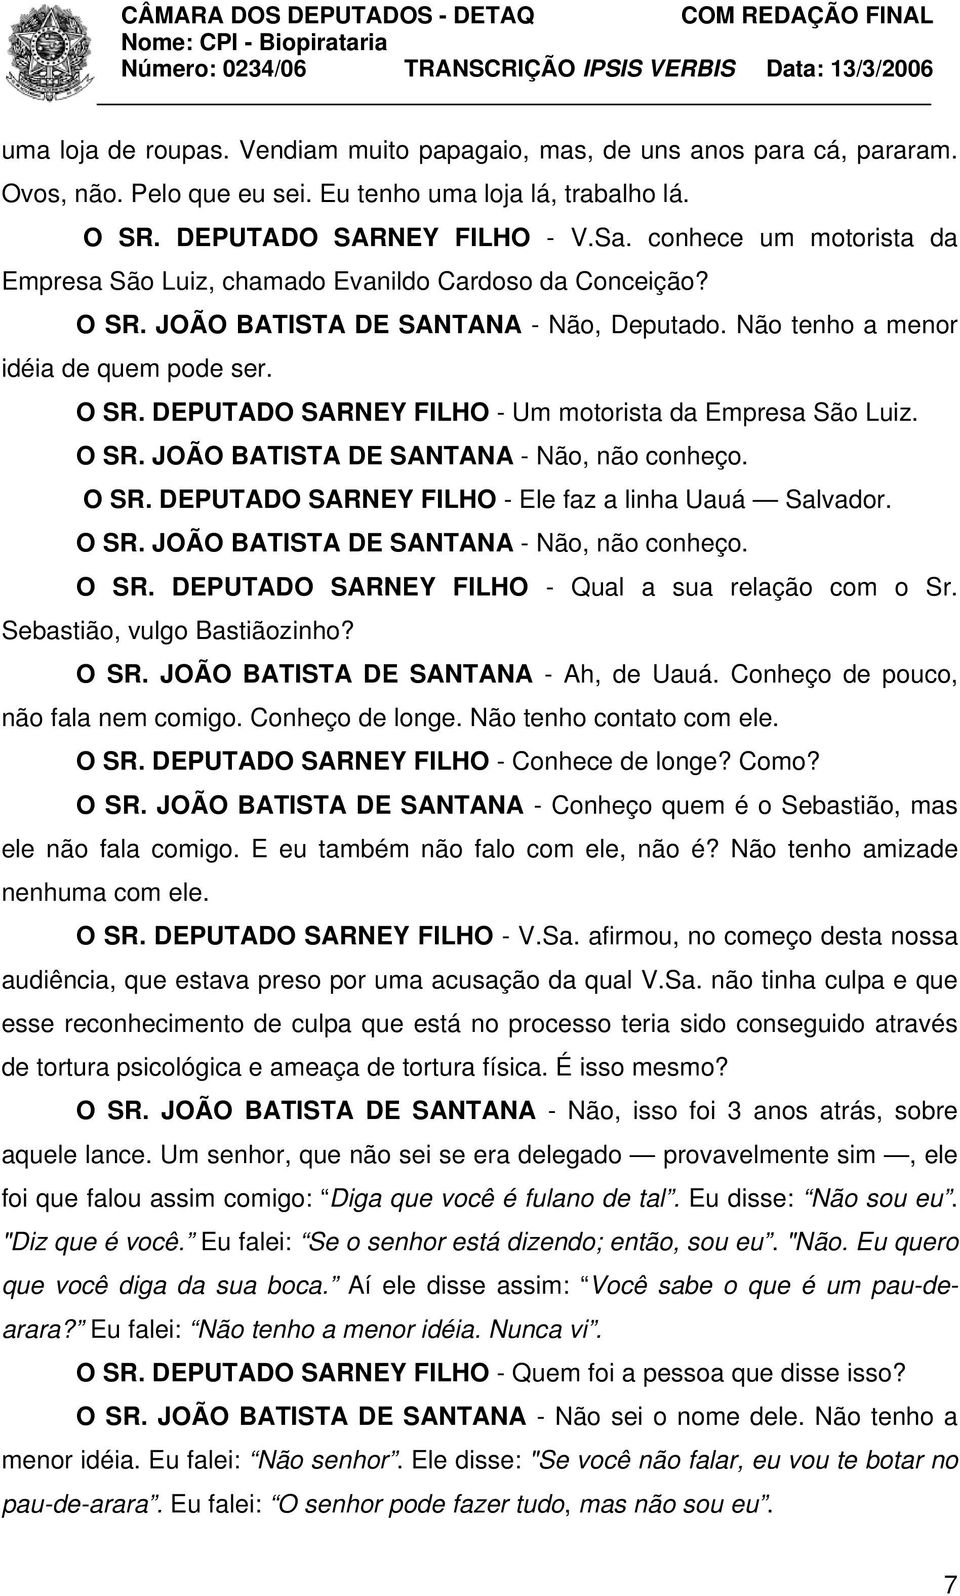 O SR. JOÃO BATISTA DE SANTANA - Não, não conheço. O SR. DEPUTADO SARNEY FILHO - Ele faz a linha Uauá Salvador. O SR. JOÃO BATISTA DE SANTANA - Não, não conheço. O SR. DEPUTADO SARNEY FILHO - Qual a sua relação com o Sr.